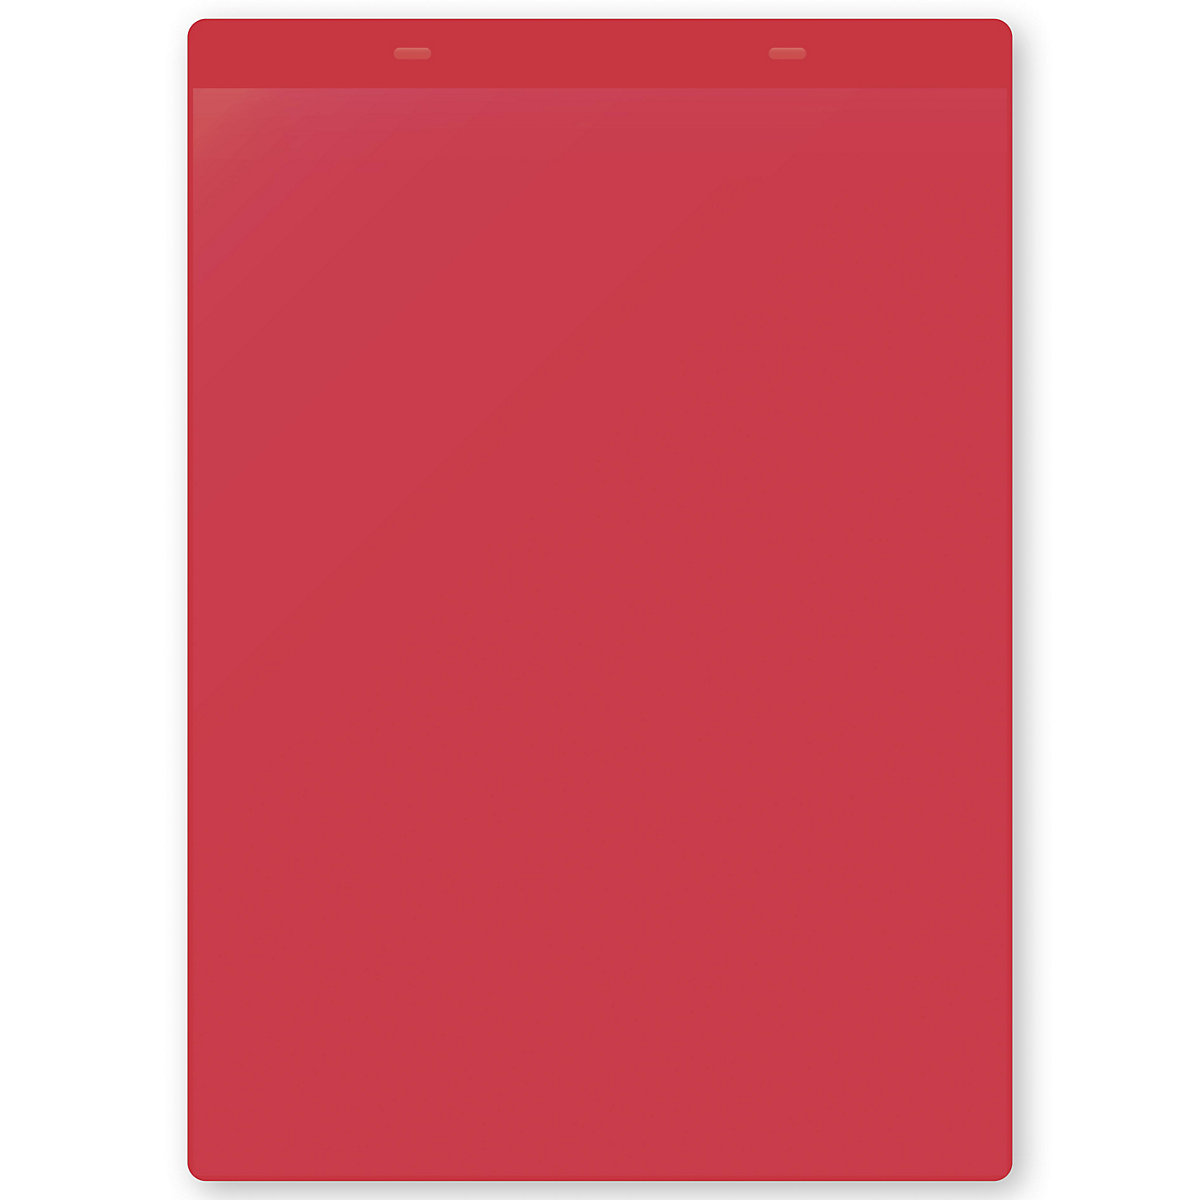 Öntapadó dokumentumtartó tasakok, DIN A4, álló, cs. e. 10 db, piros